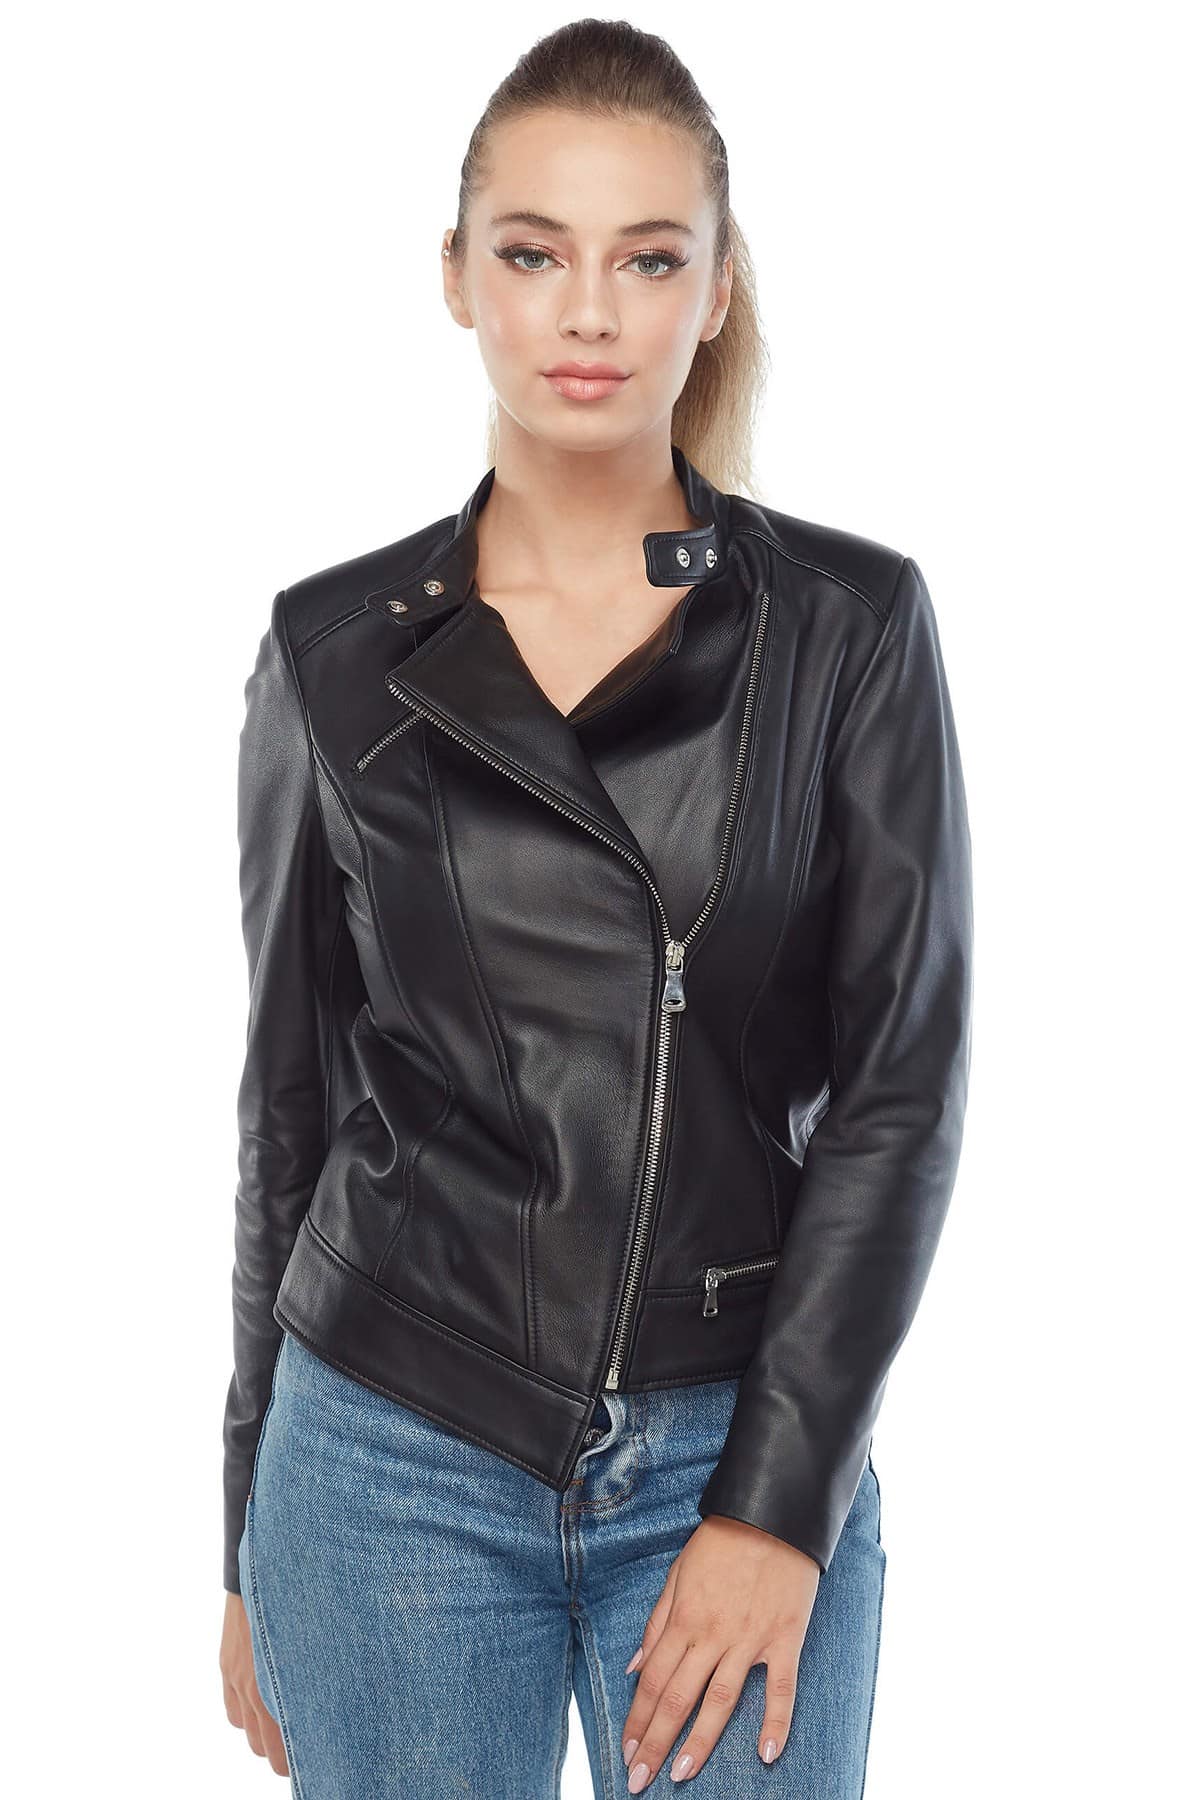 Buy Genuine Women's Leather Jacket in Black in Reasonable Price